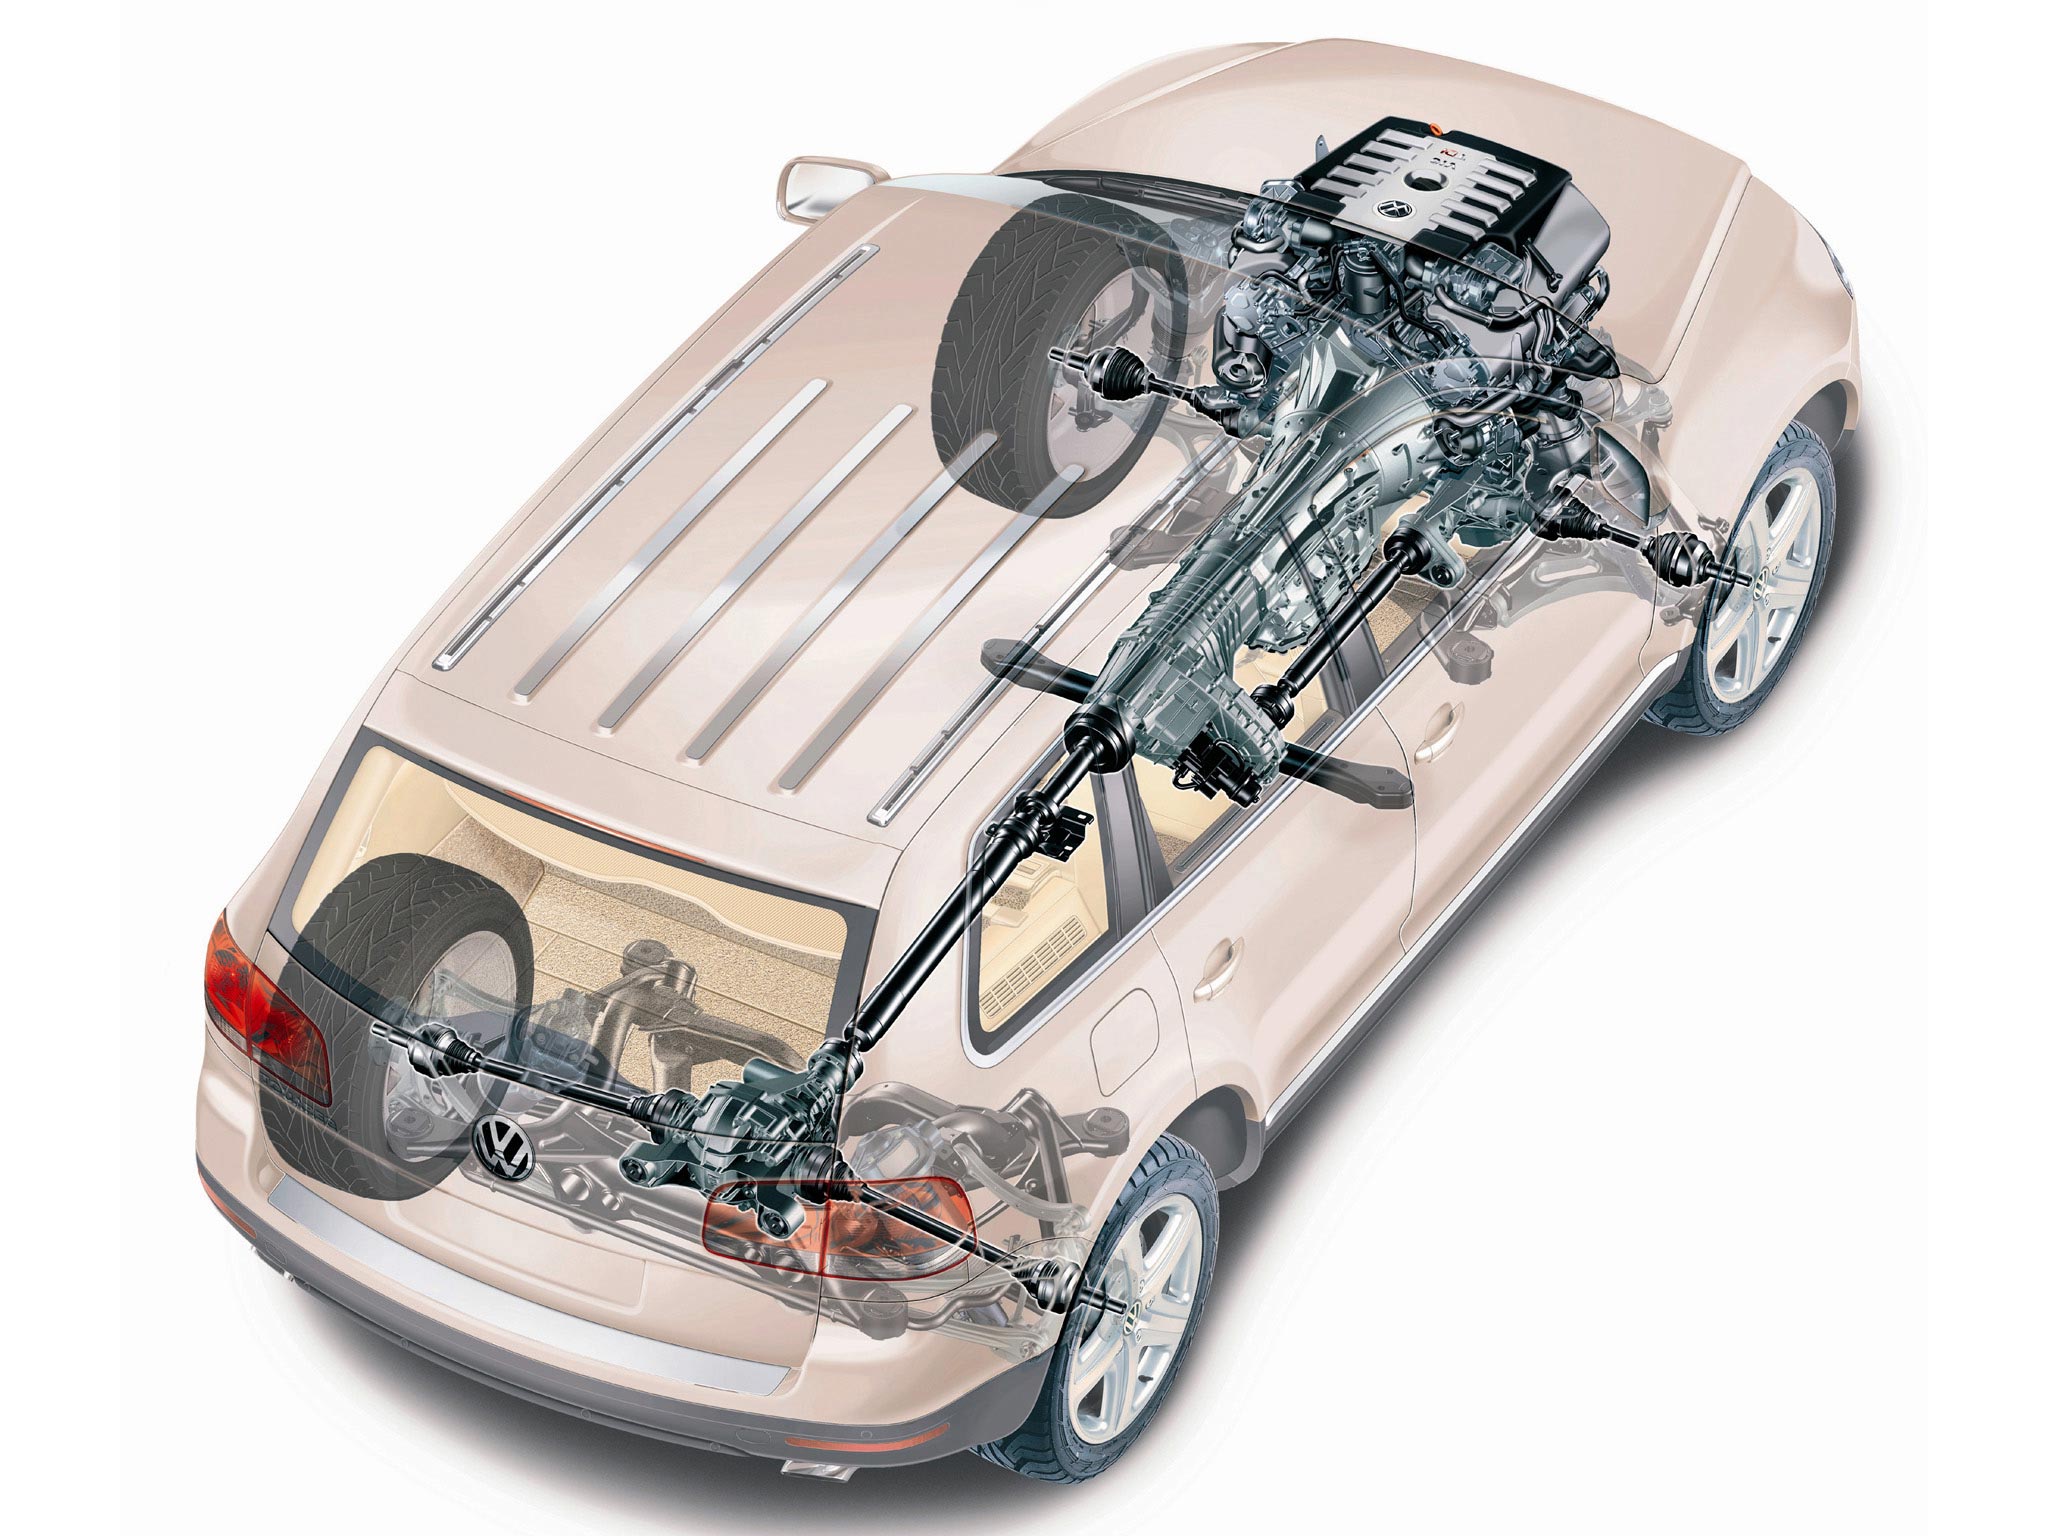 Volkswagen Touareg 2002 cutaway drawing